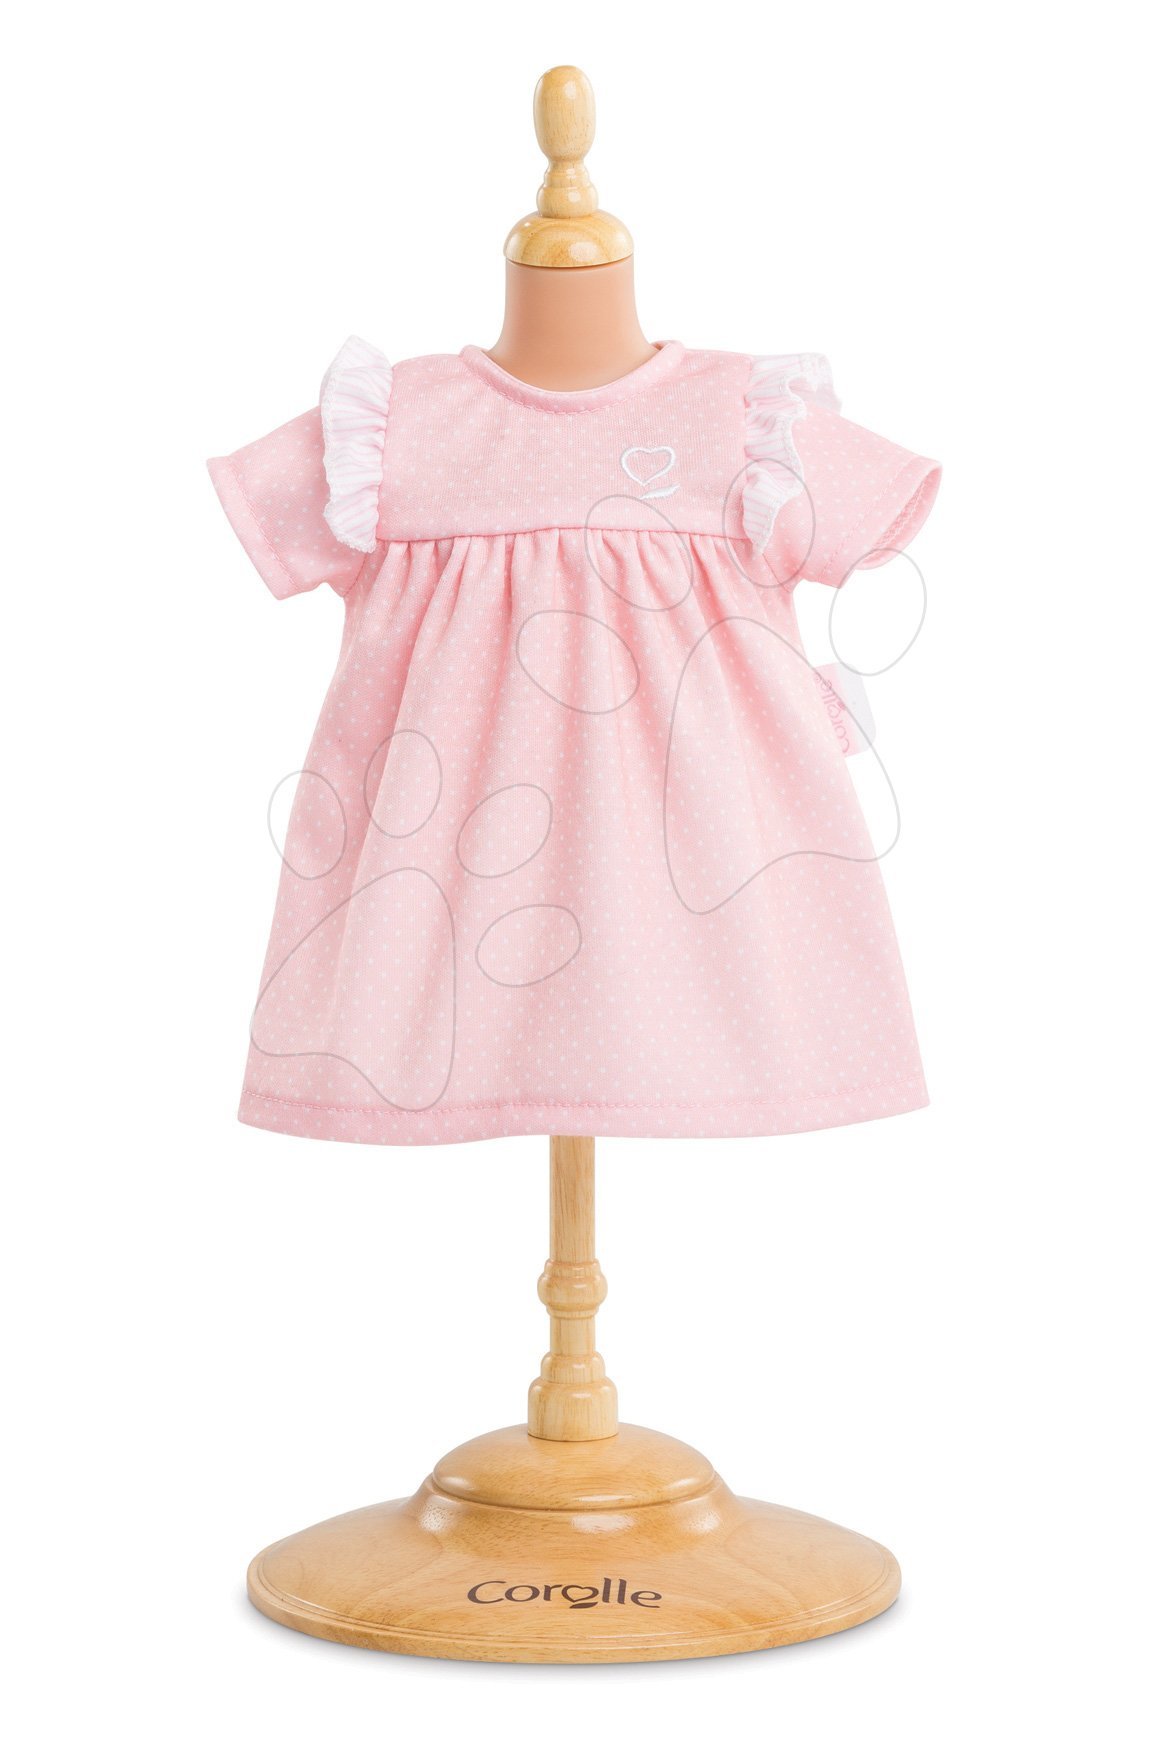 Oblečenie Dress Candy Bébé Corolle pre 30 cm bábiku od 18 mes